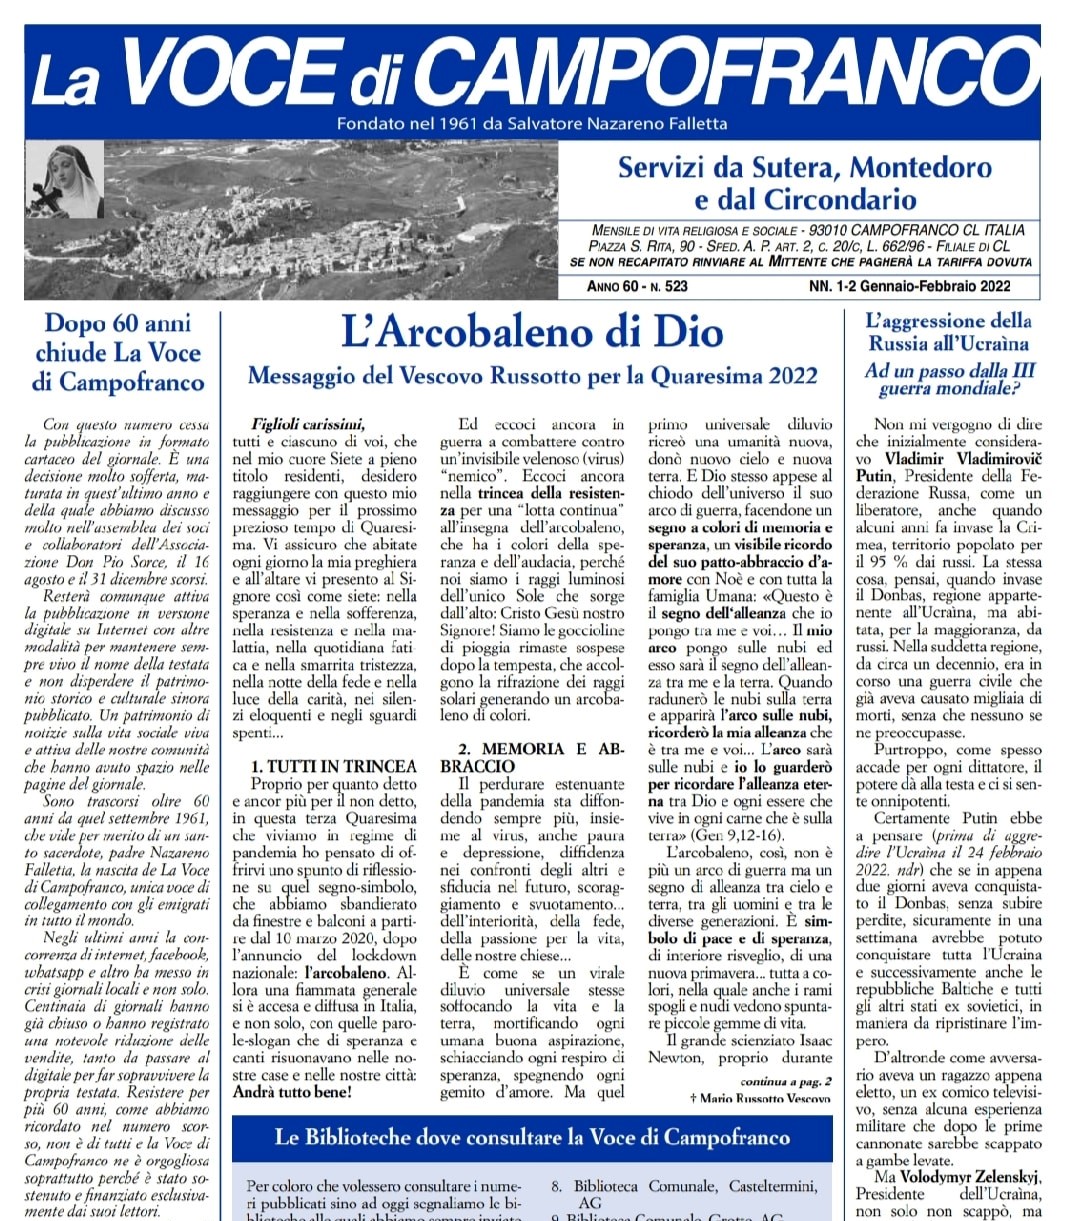 Campofranco. Dopo 60 anni chiude le pubblicazioni il giornale “La Voce di Campofranco”